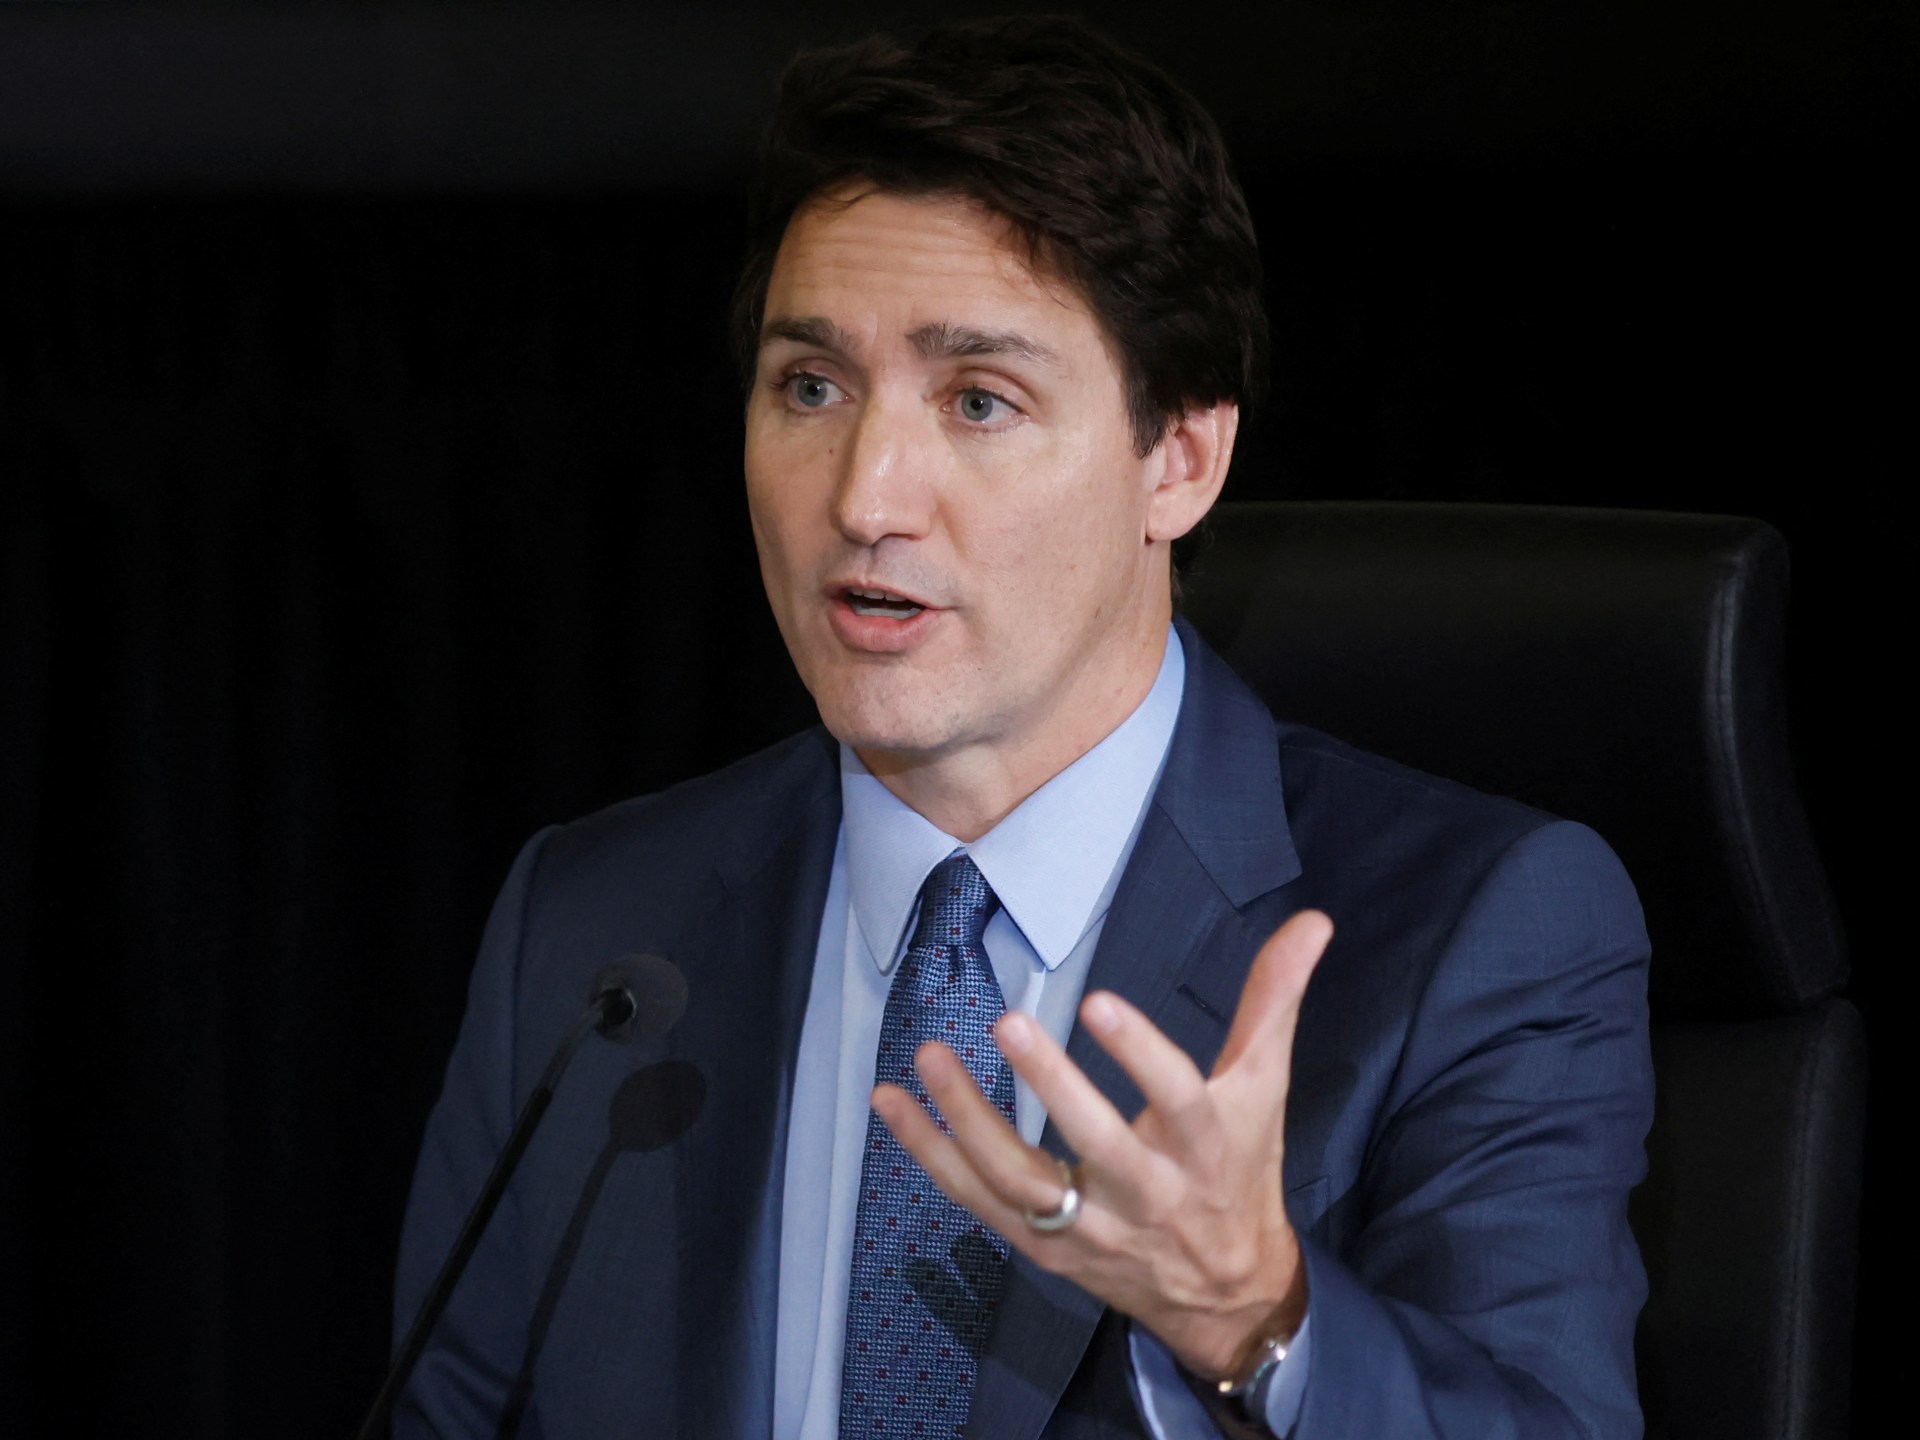 Trudeau Kanada ‘khawatir’ tentang kebijakan Netanyahu |  Berita Politik